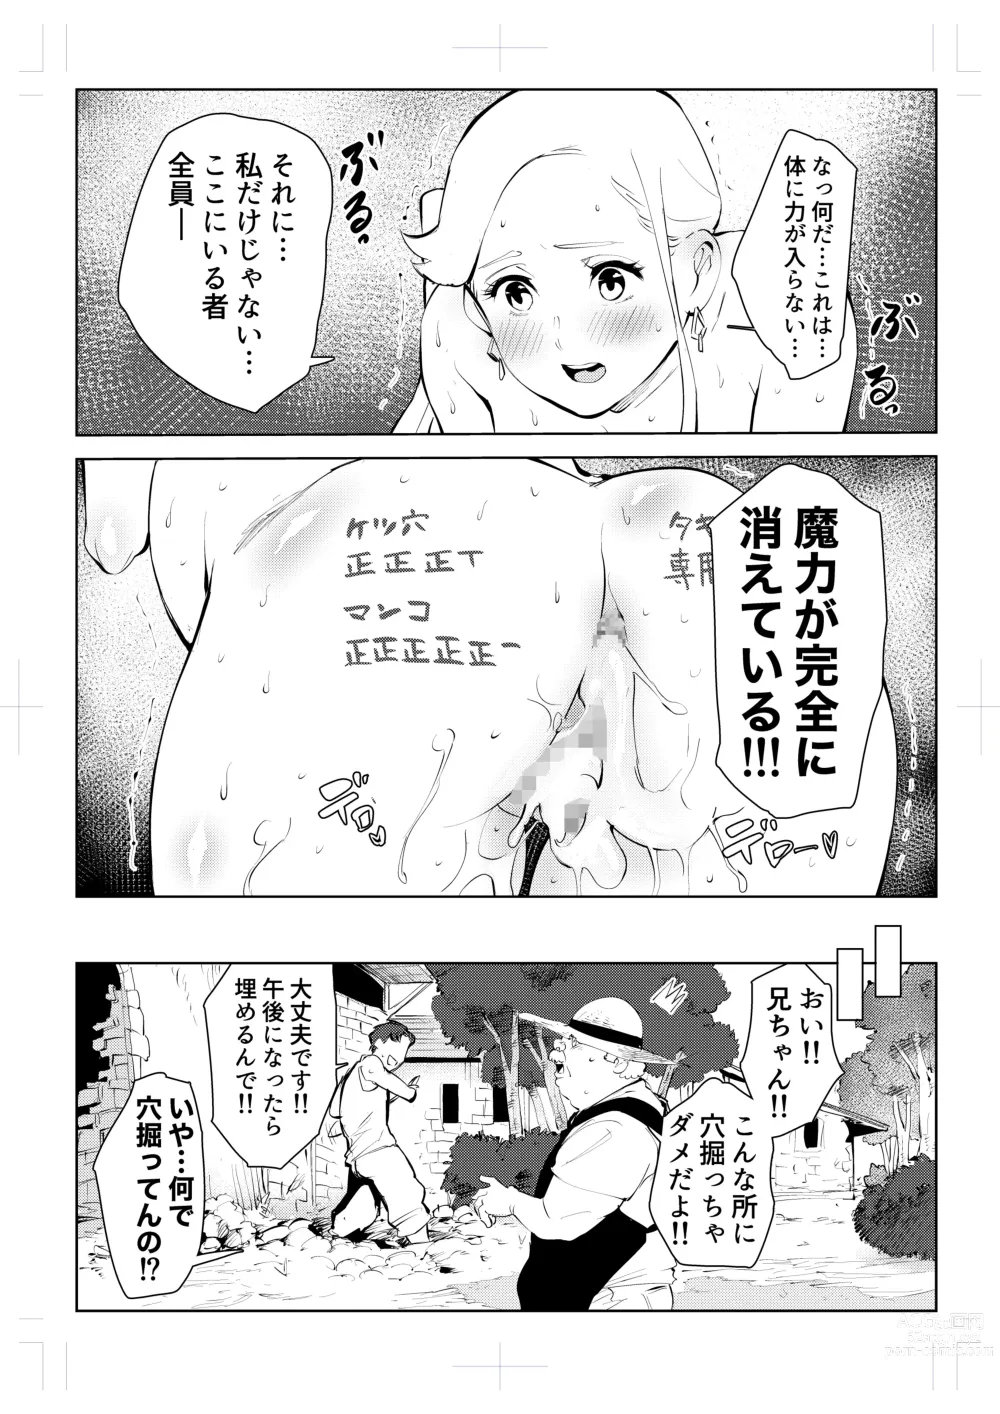 Page 110 of doujinshi 40-sai no Mahoutukai  0